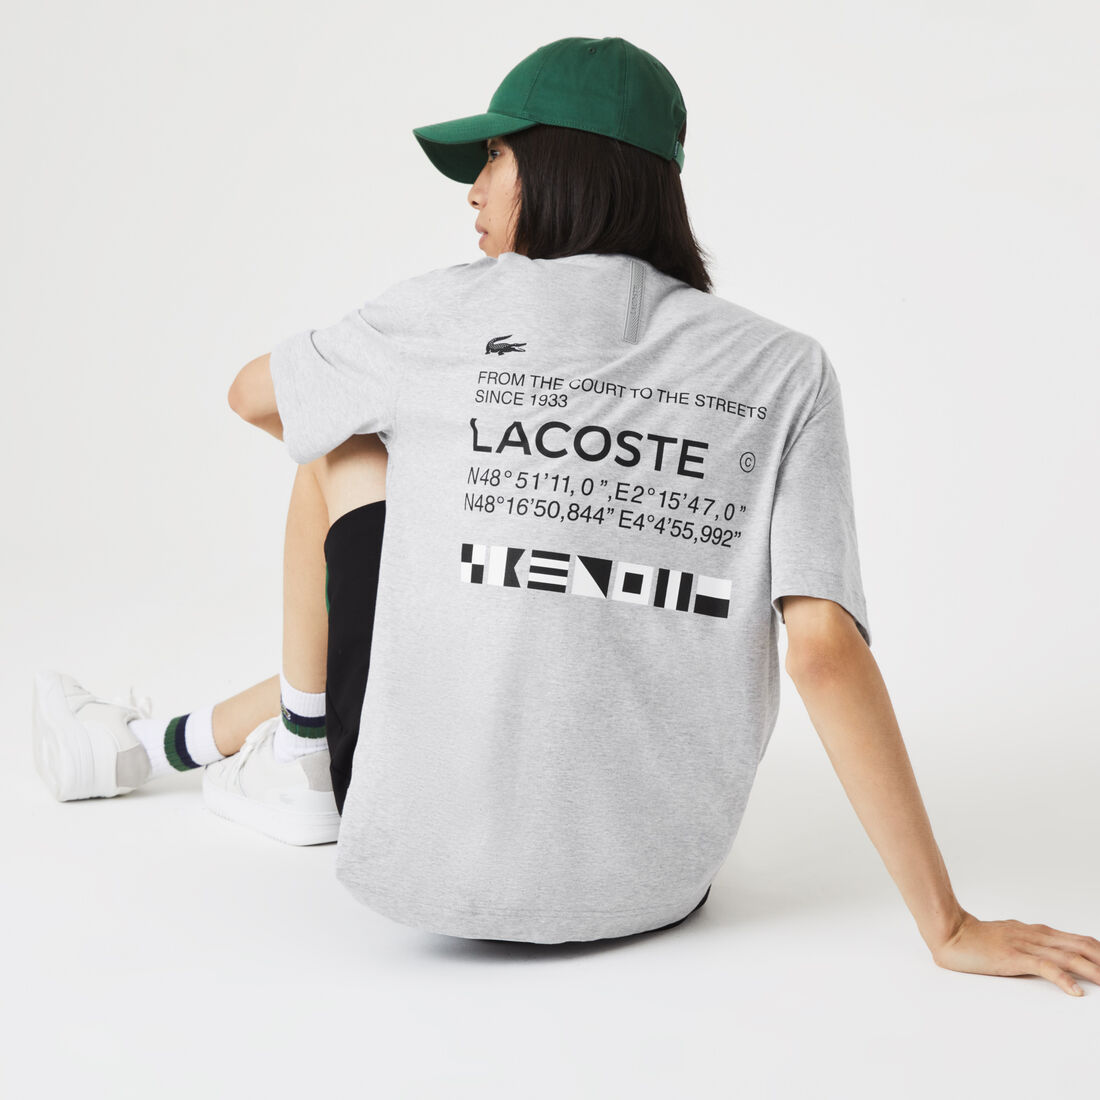 Men's Lacoste Print Loose Fit T-Shirt